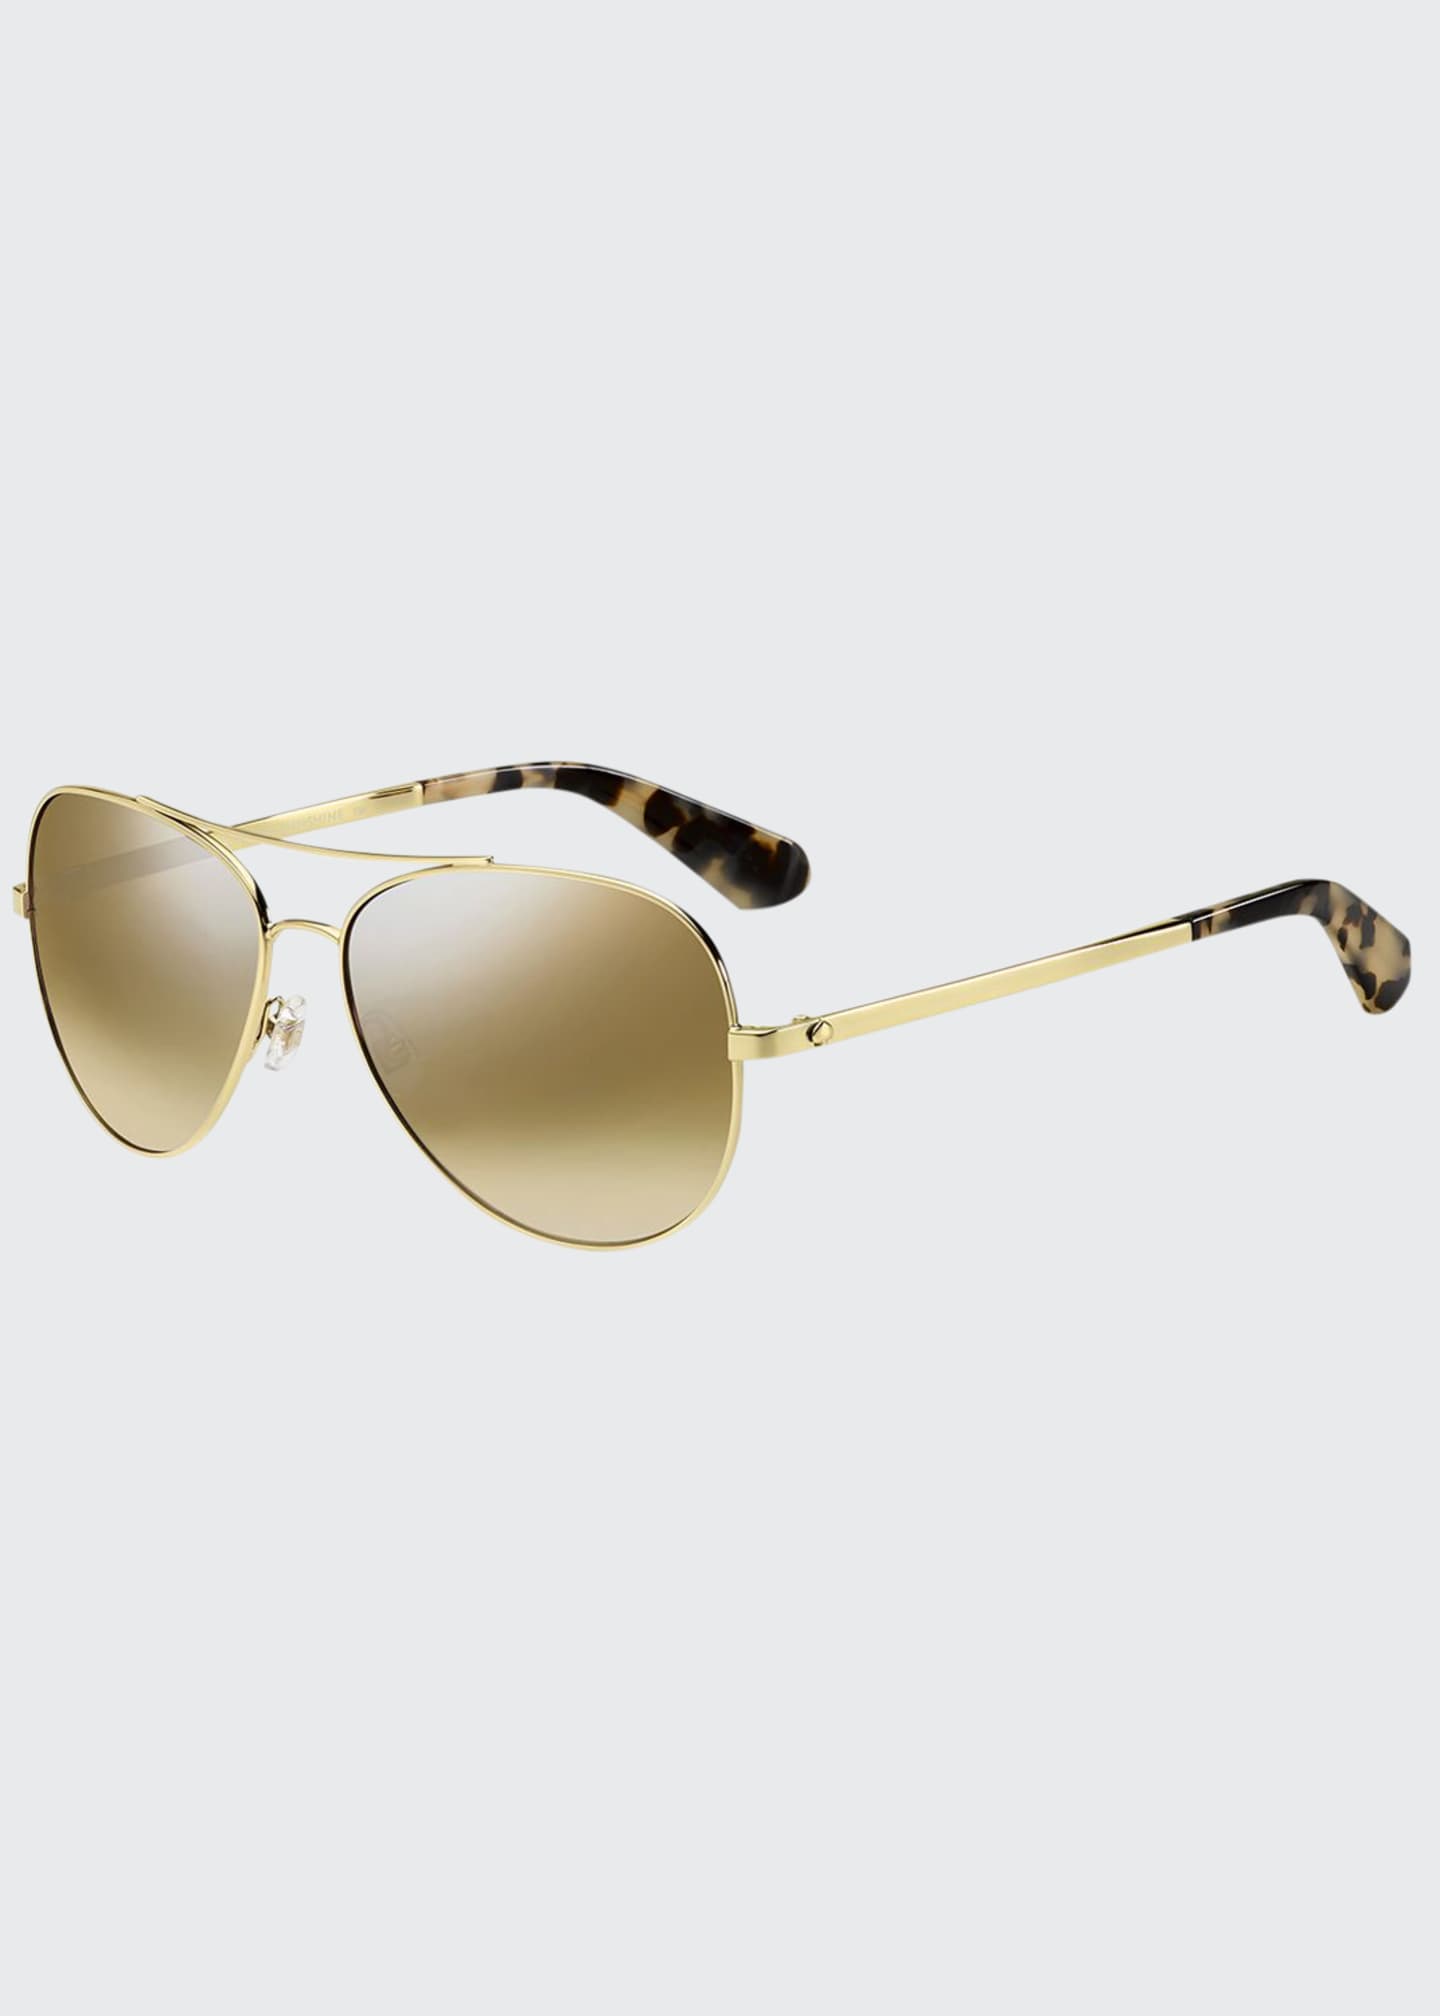 kate spade new york avaline mirrored aviator sunglasses - Bergdorf Goodman